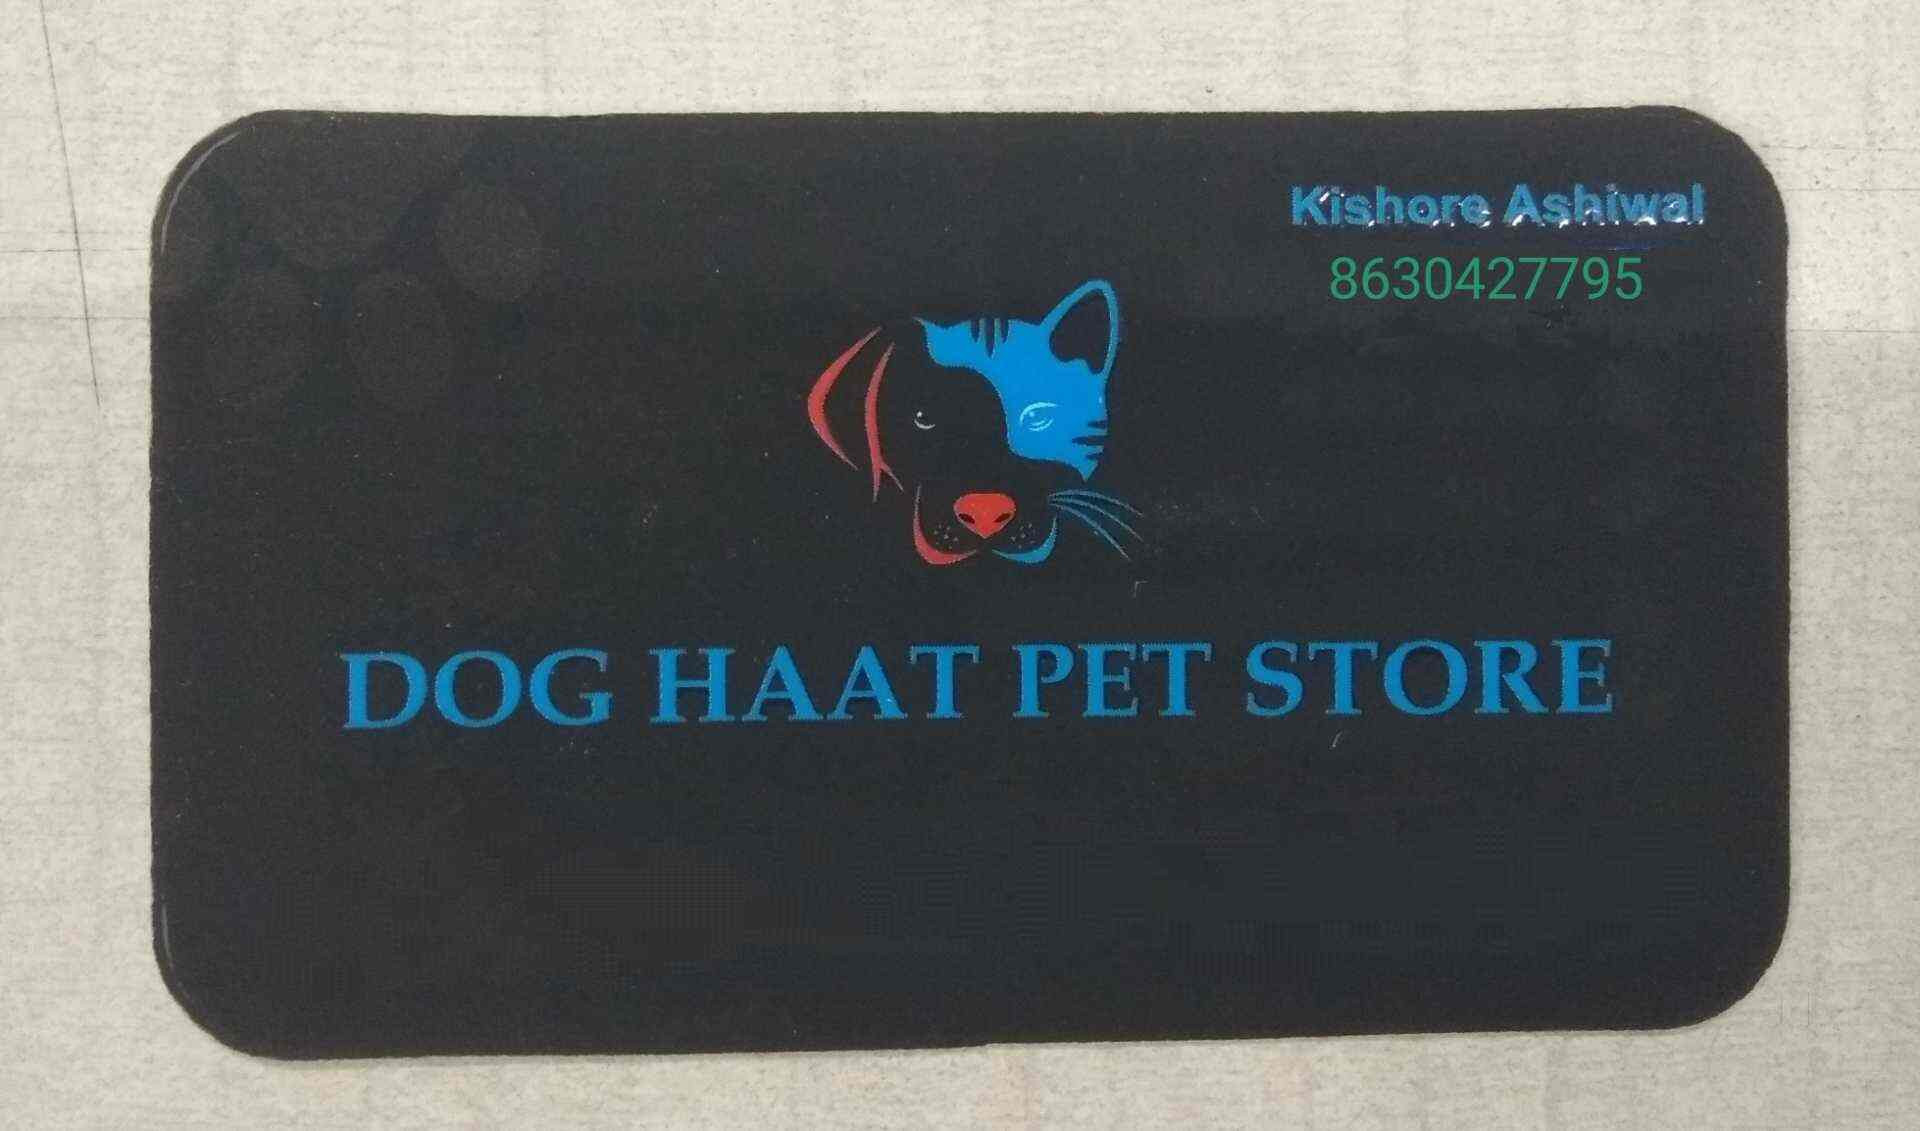 Dog Haat Pet Store